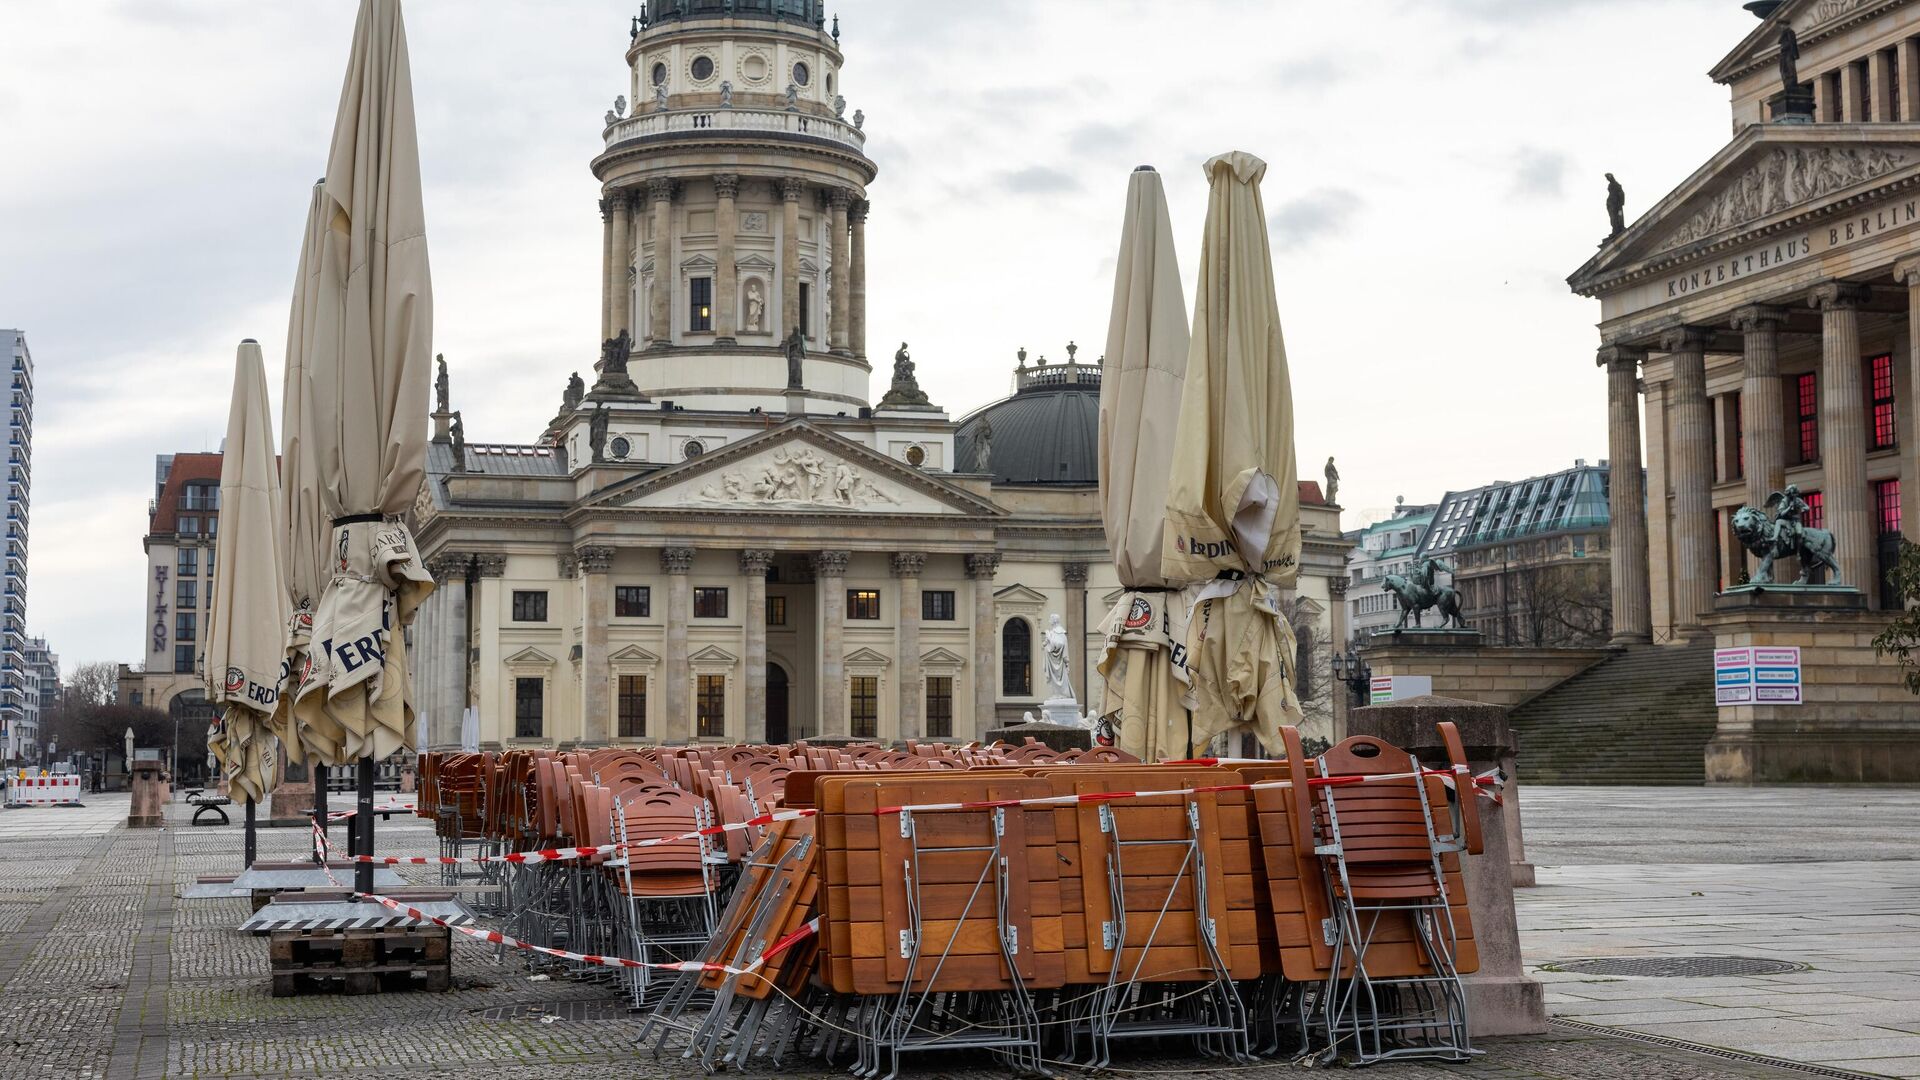 Столы и стулья возле кафе на площади Жандарменмаркт в Берлине - РИА Новости, 1920, 31.12.2020